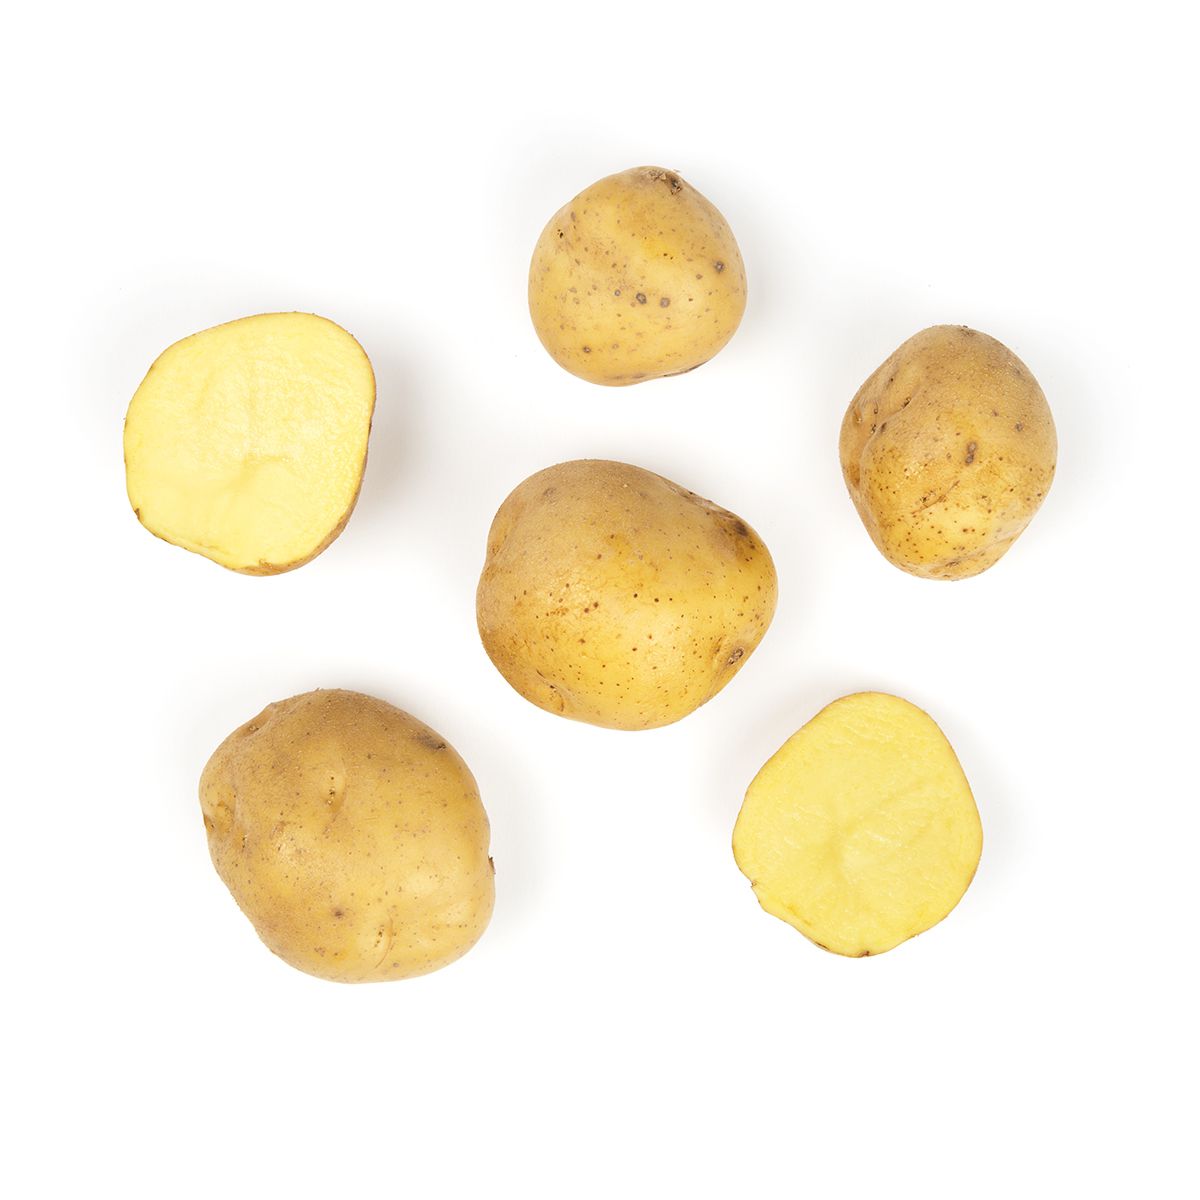 BoxNCase Yukon A Potatoes